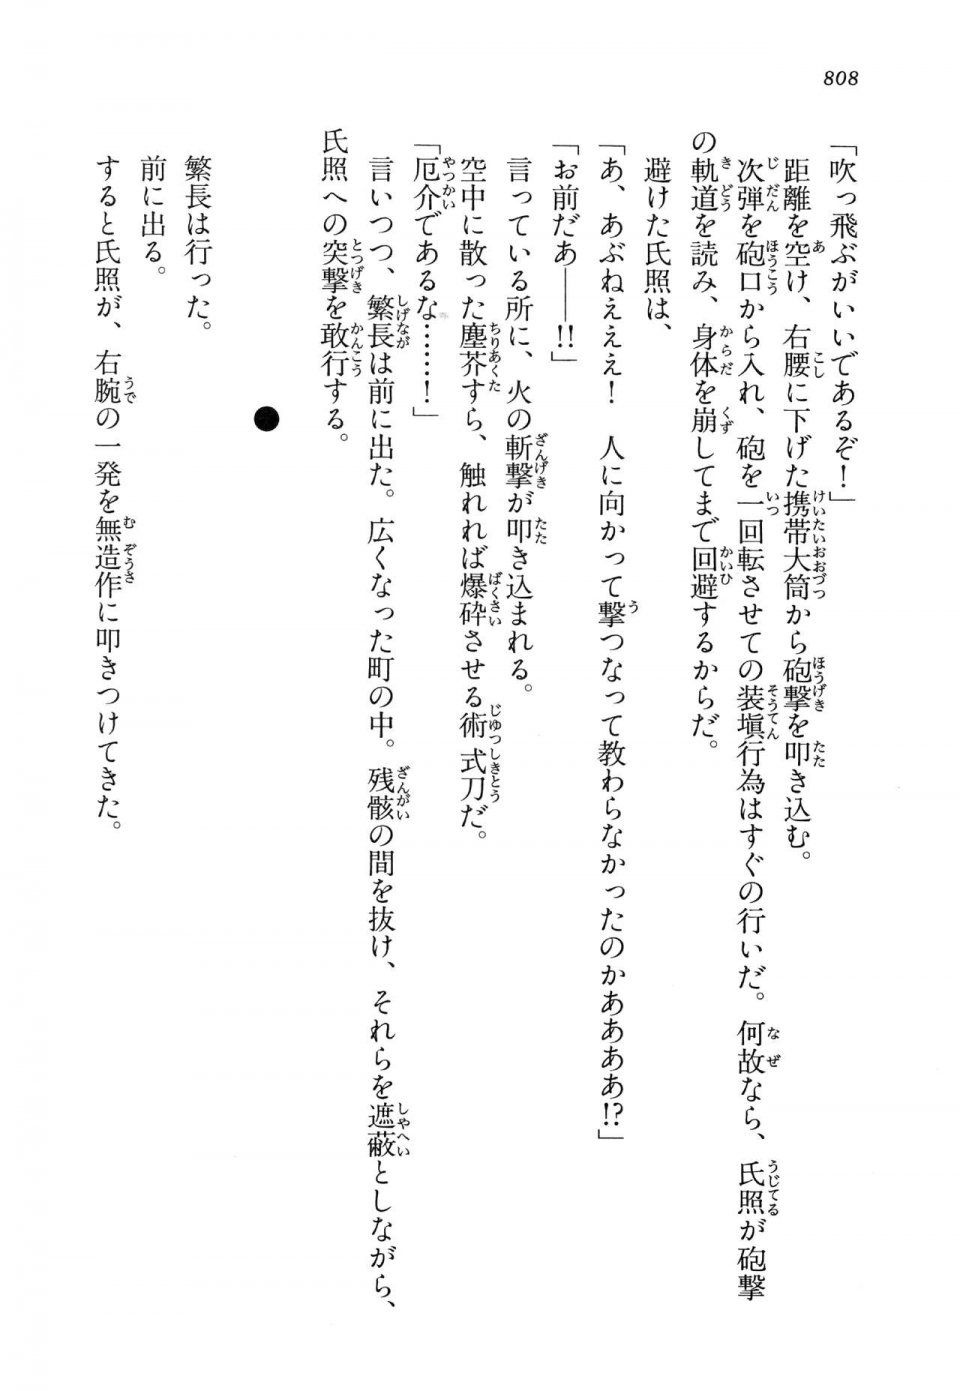 Kyoukai Senjou no Horizon LN Vol 14(6B) - Photo #808